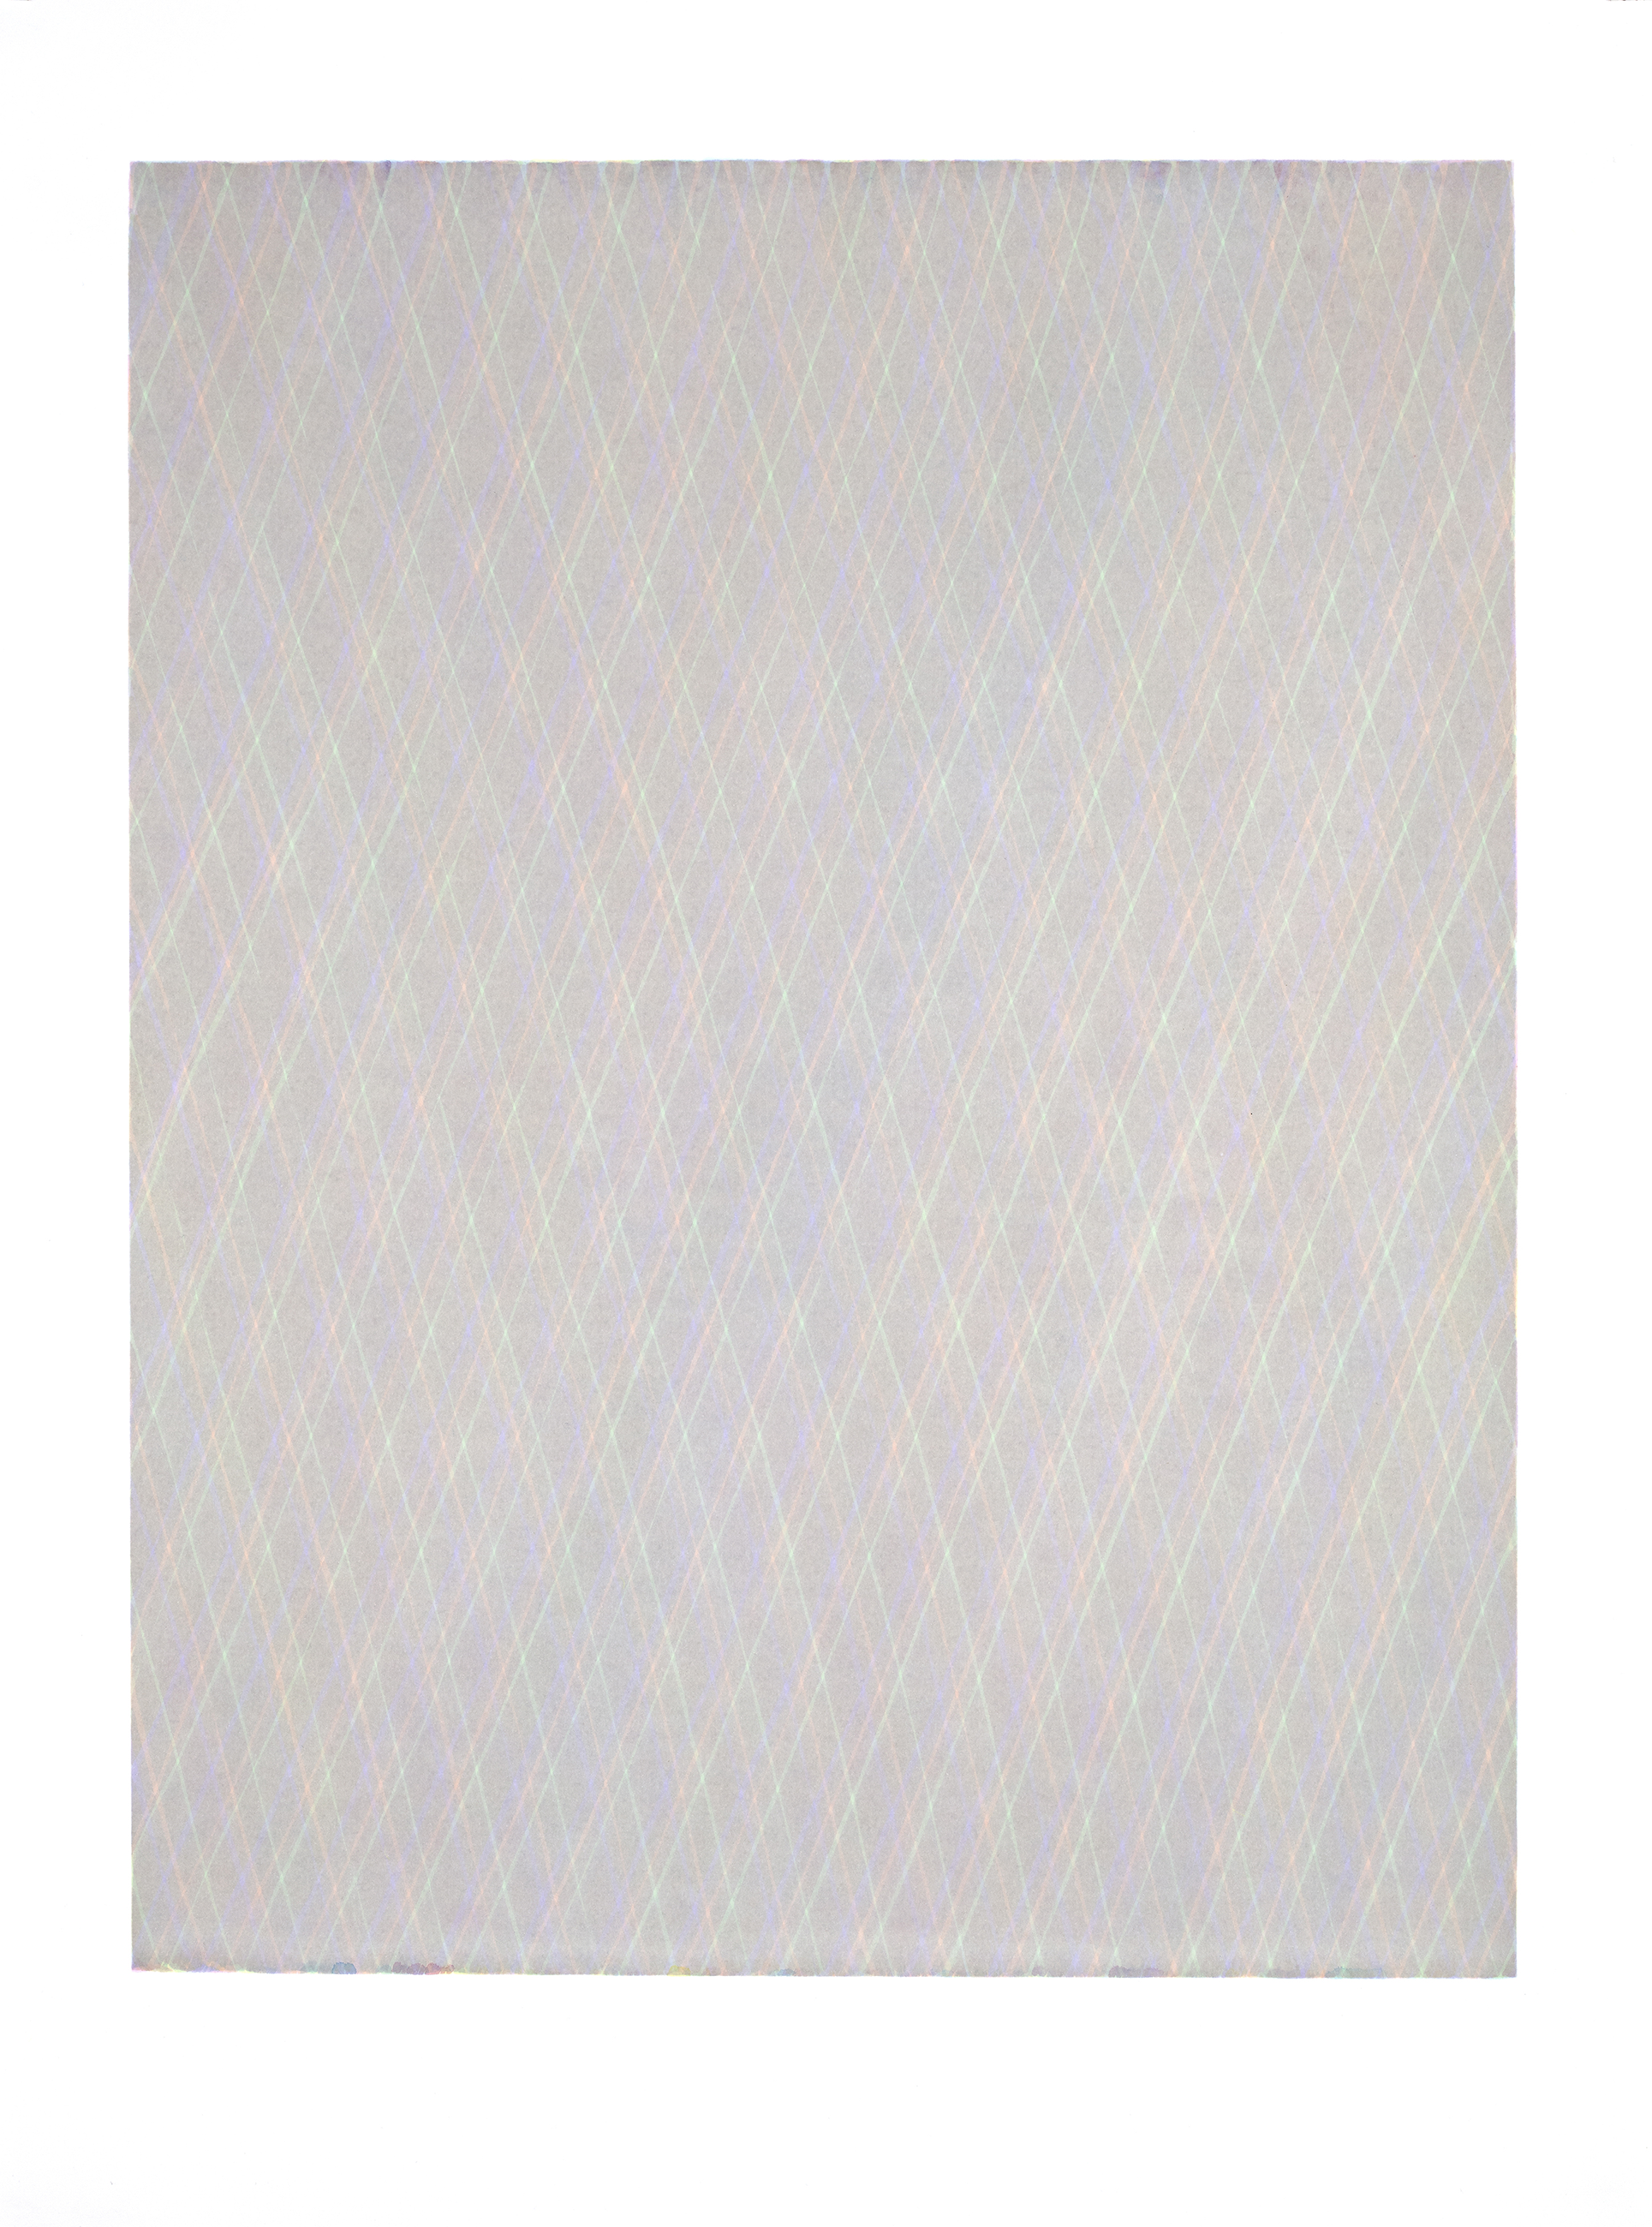 LUISE VON ROHDEN Zeichnung (7d grb/un 35/40), 2019, farbige Tusche auf Papier, 140 x 120 cm, Foto:Thomas Bruns